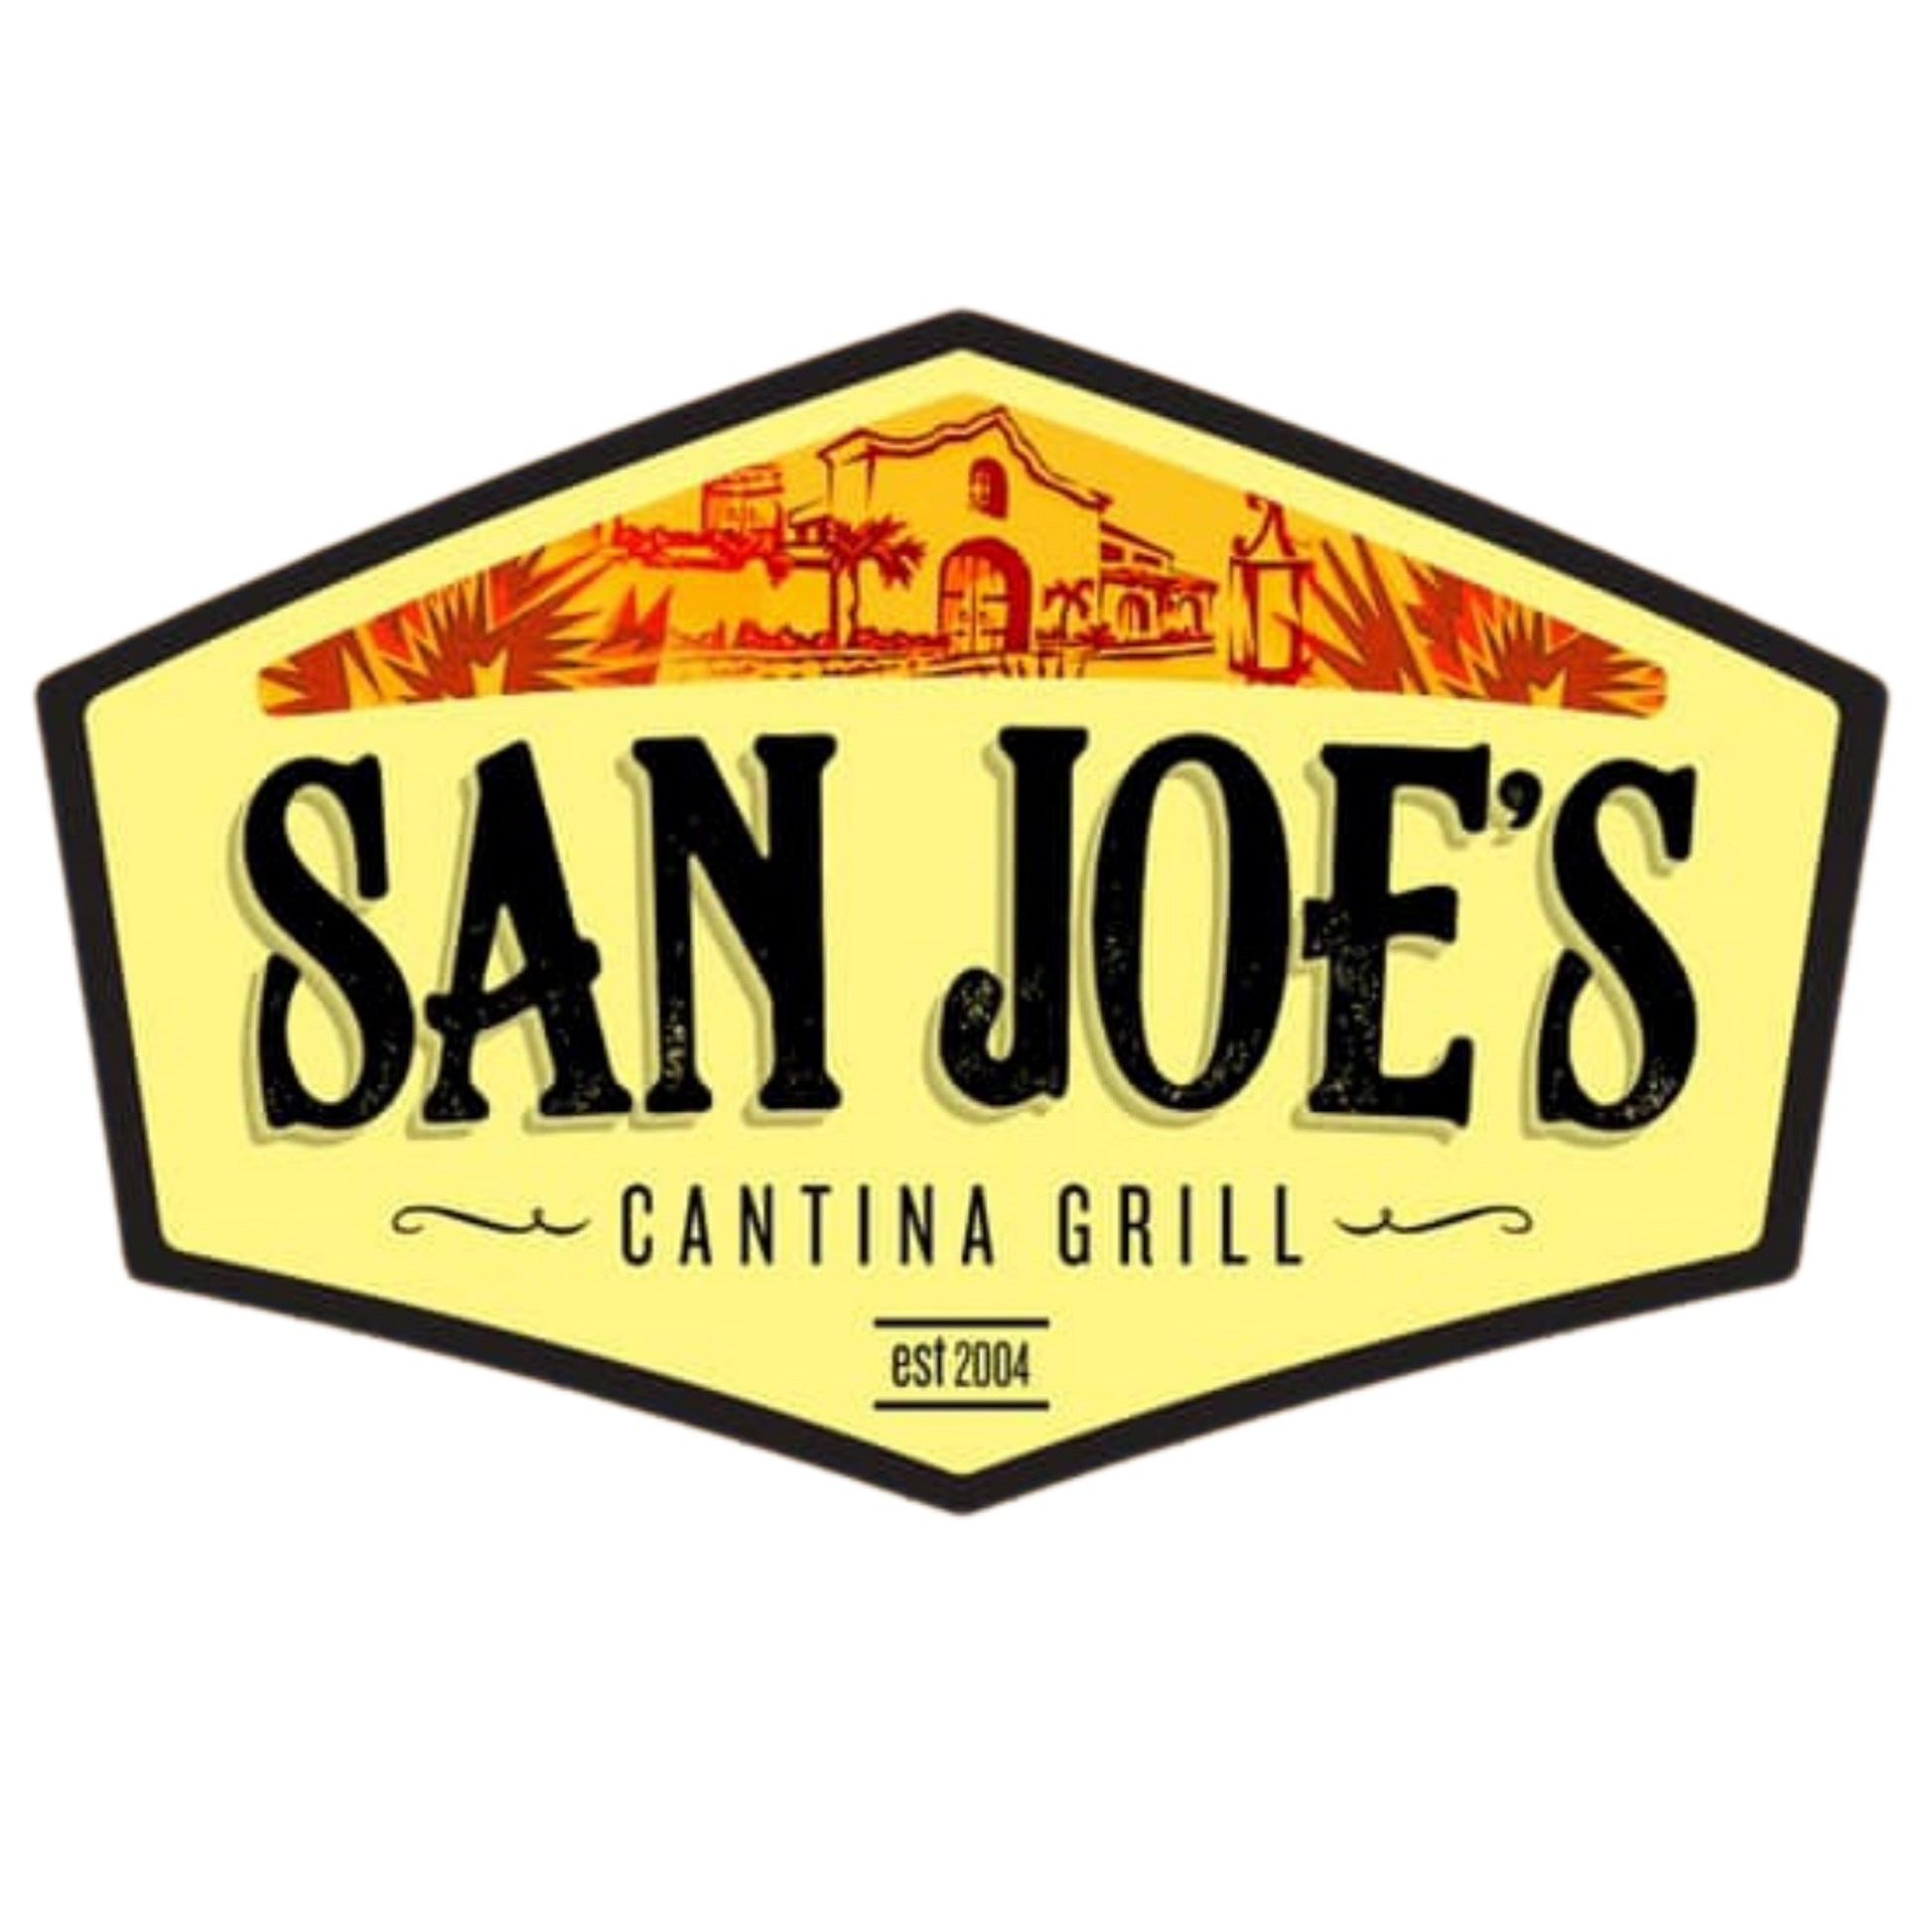 San Joe’s Cantina Grill